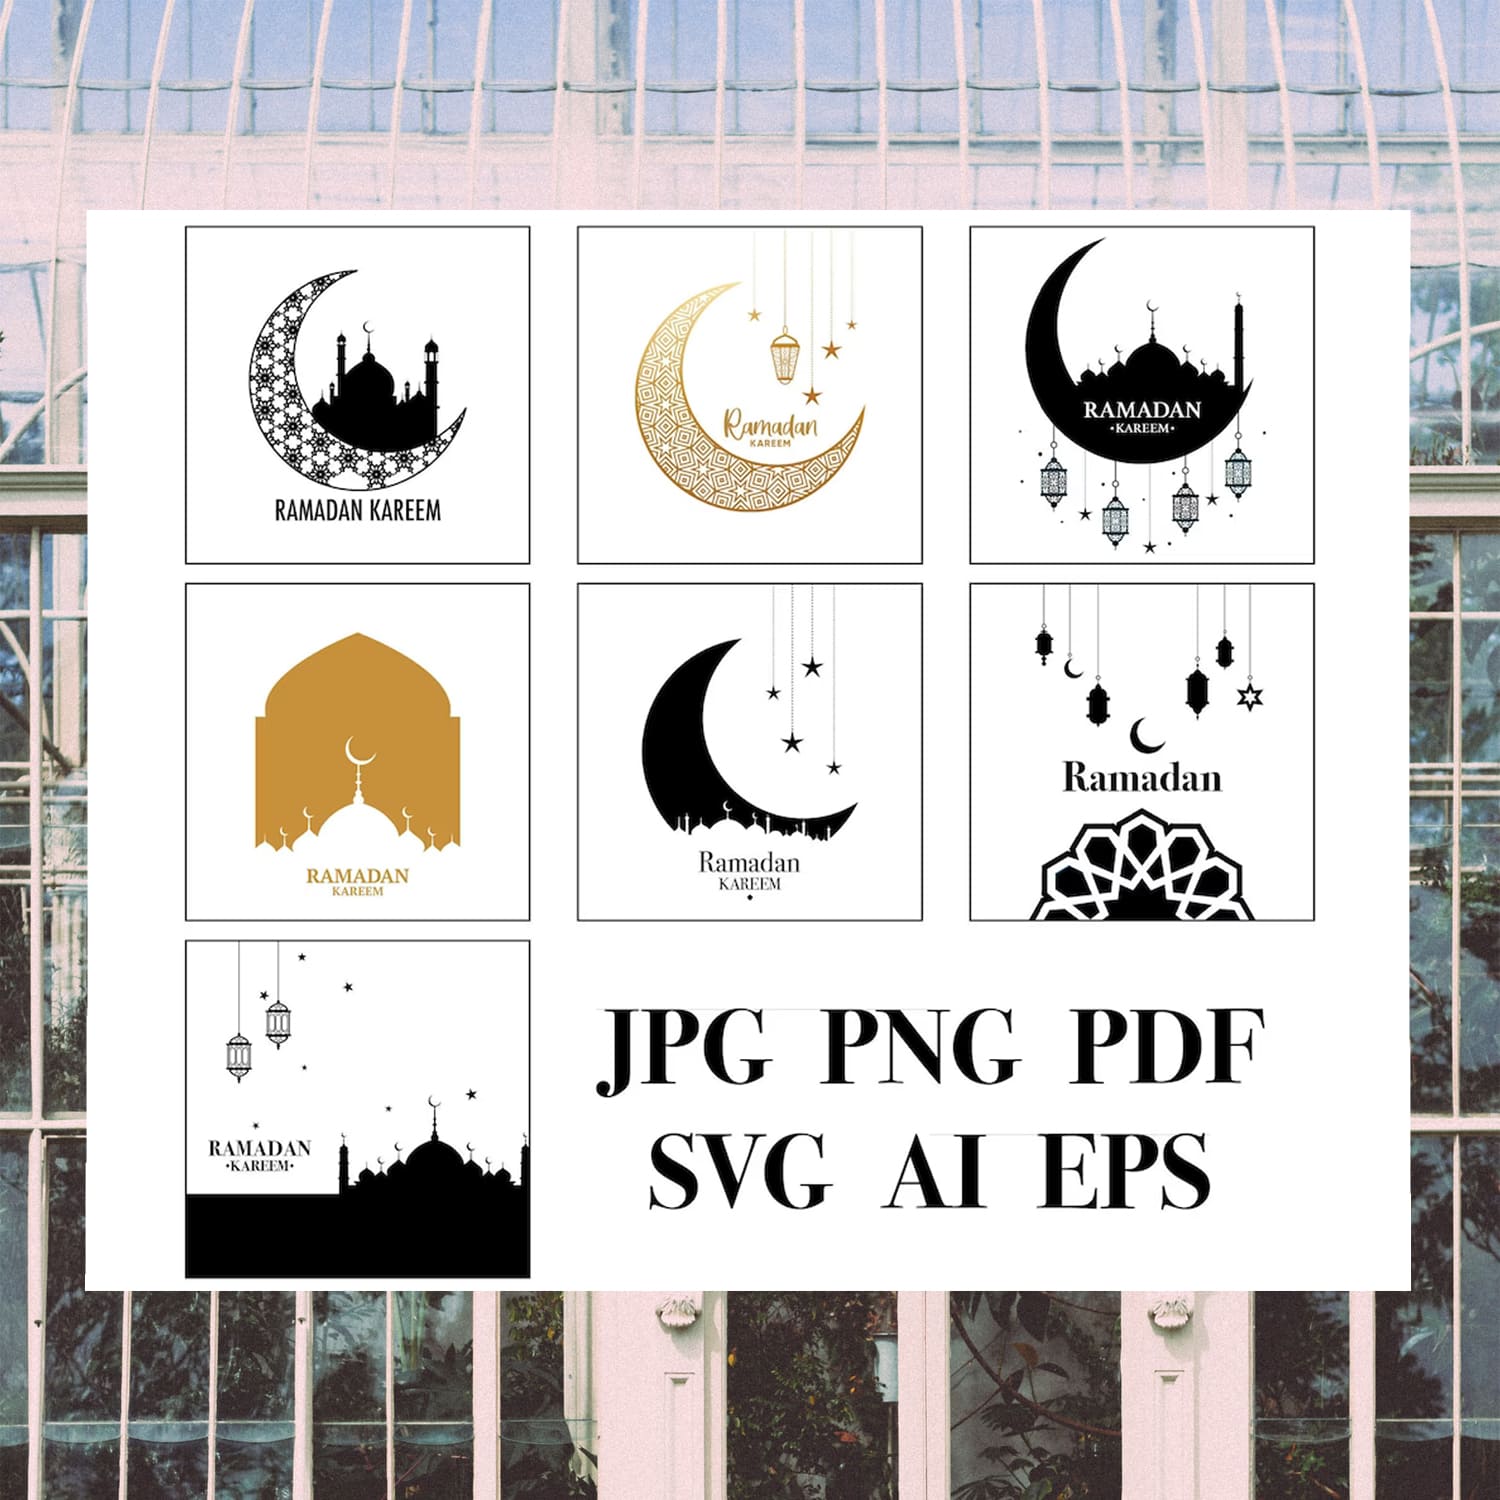 Ramadan kareem SVG Bundle.